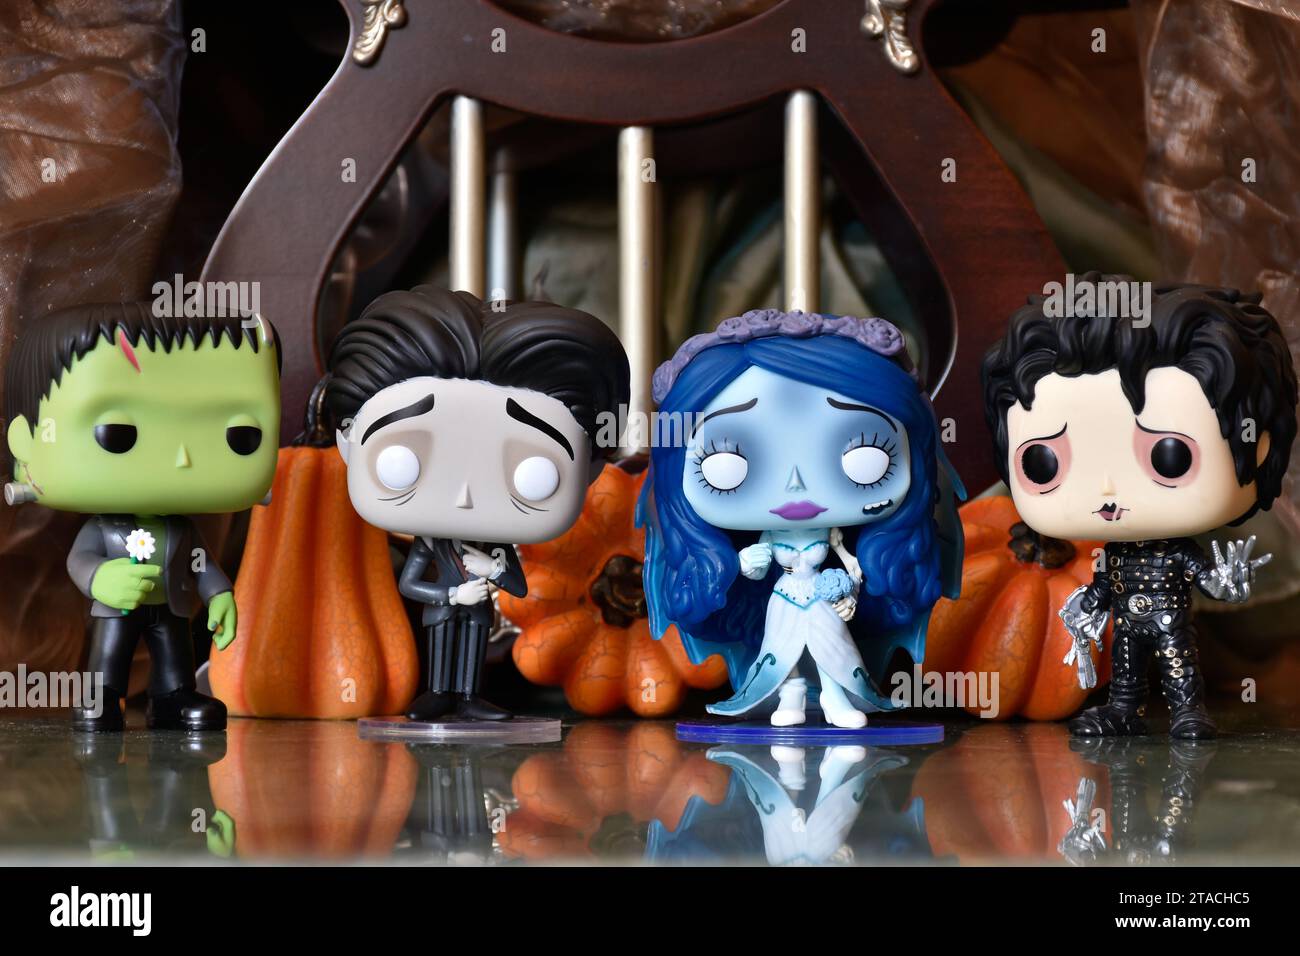 Funko Pop figurines d'action des personnages d'horreur le monstre de Frankenstein, Edward Scissorhands, Emily et Victor de Corpse bride. Décorations d'Halloween. Banque D'Images